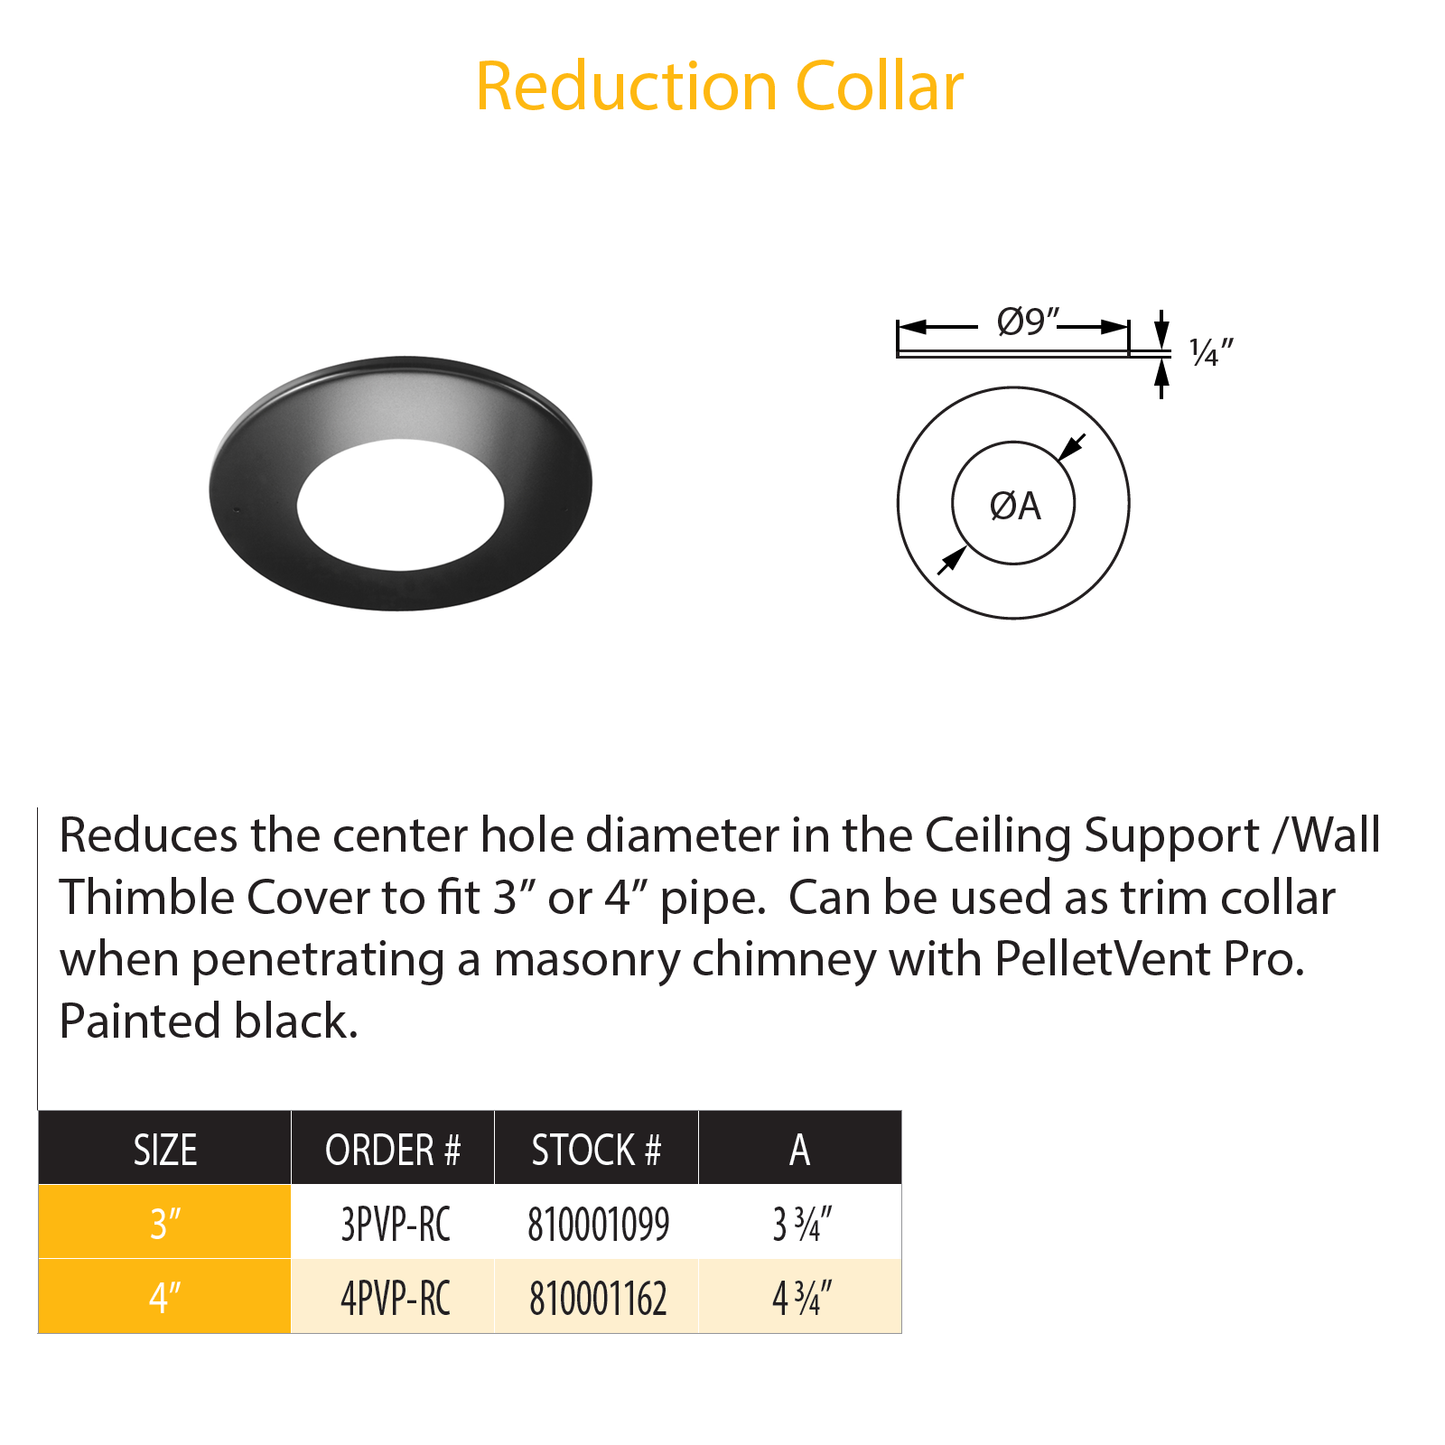 DuraVent Pellet Vent Pro Reduction Collar | 3PVP-RC